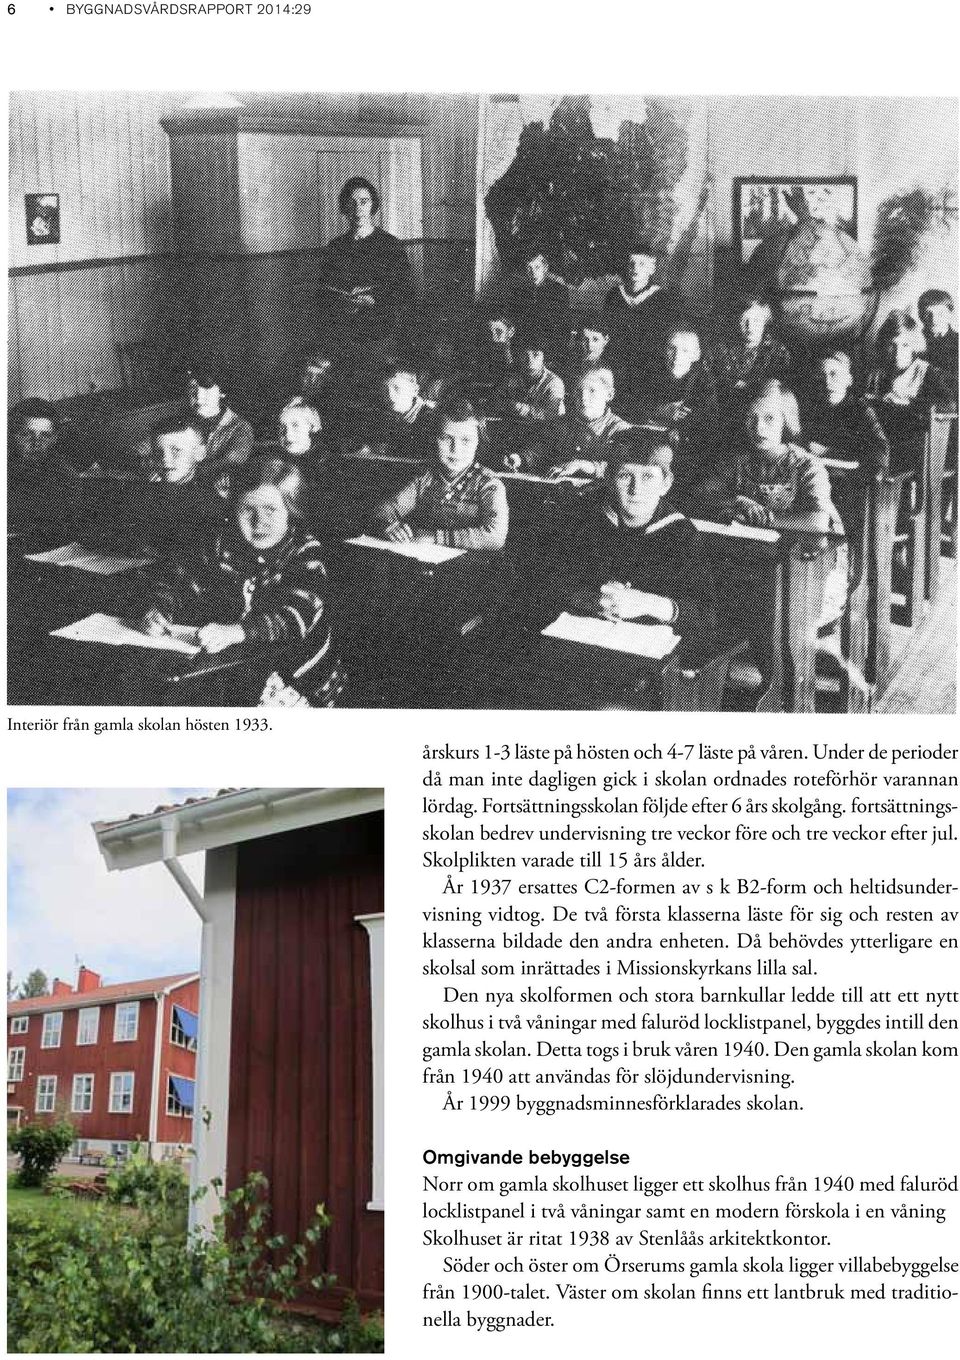 fortsättningsskolan bedrev undervisning tre veckor före och tre veckor efter jul. Skolplikten varade till 15 års ålder. År 1937 ersattes C2-formen av s k B2-form och heltidsundervisning vidtog.